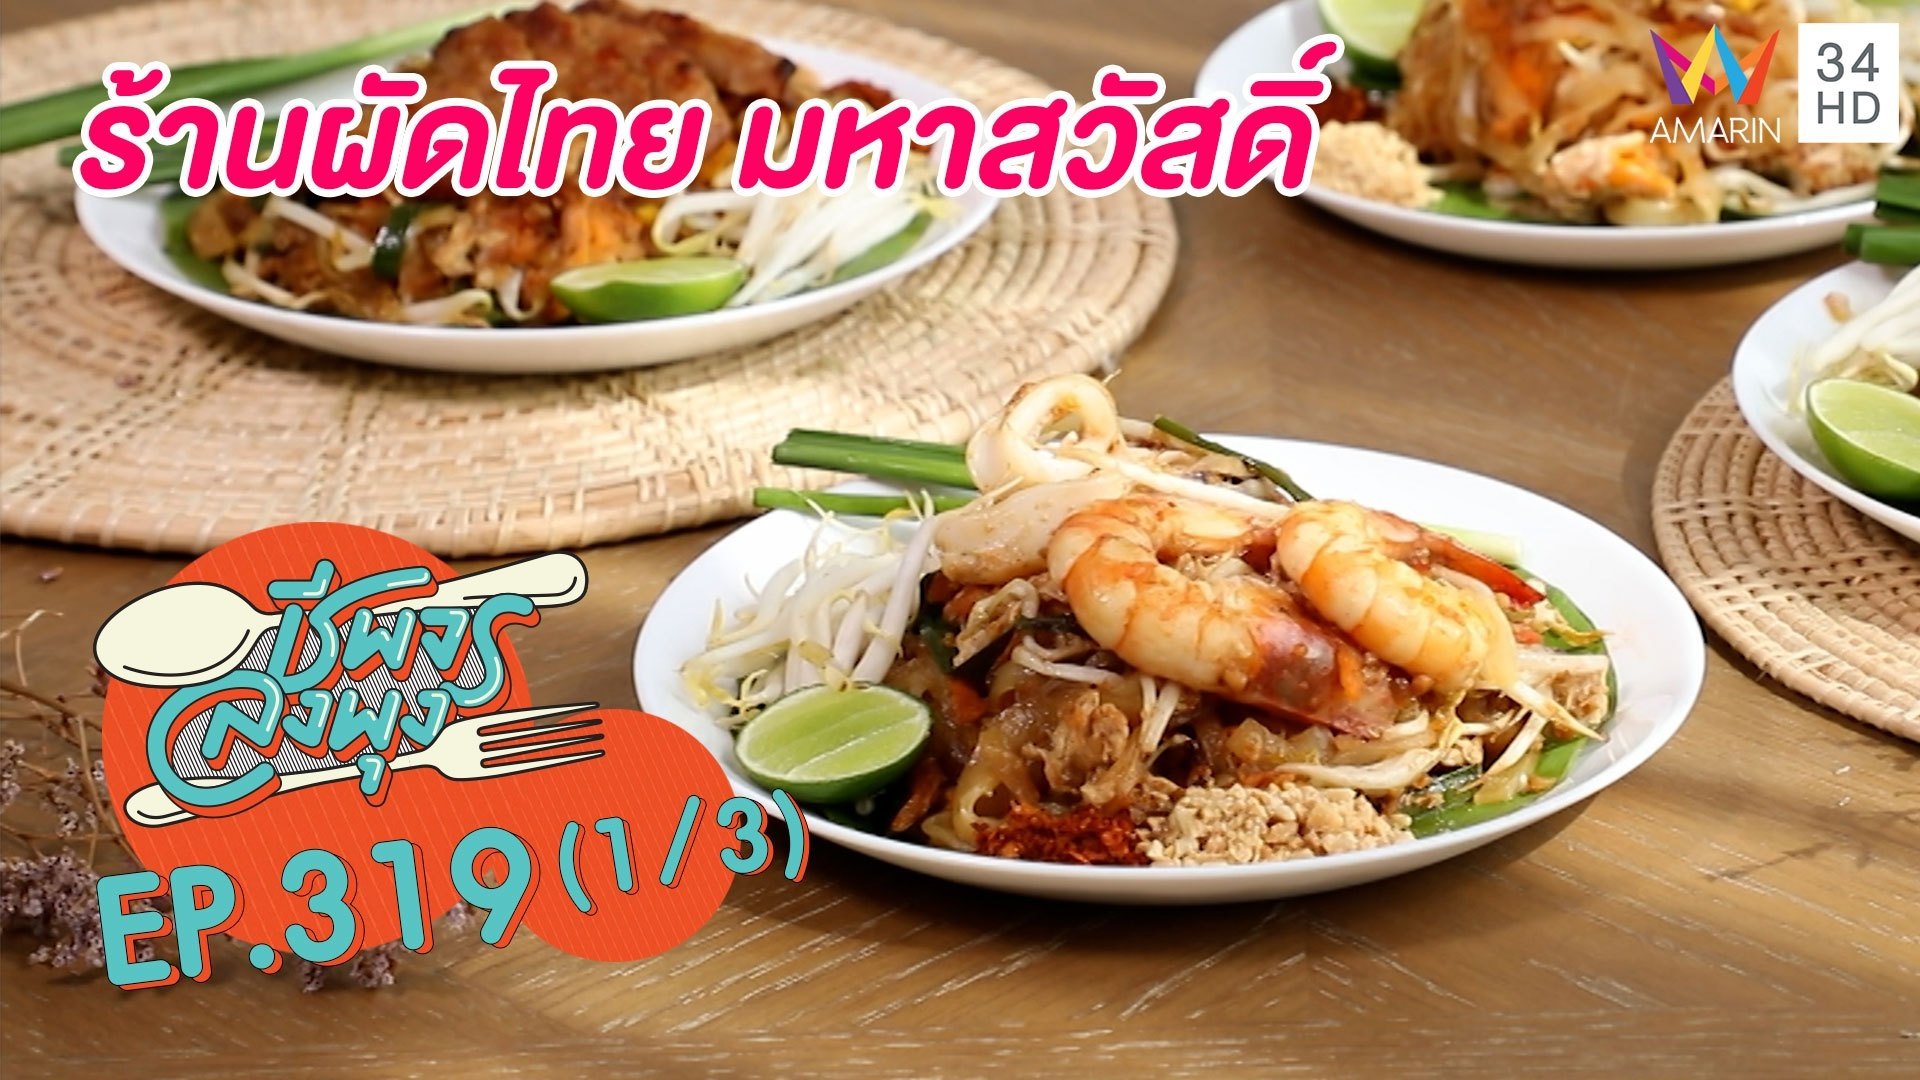 ผัดไทยอร่อยไม่ต้องปรุง @ร้านผัดไทย มหาสวัสดิ์ | ชีพจรลงพุง | 28 ส.ค. 64 (1/3) | AMARIN TVHD34